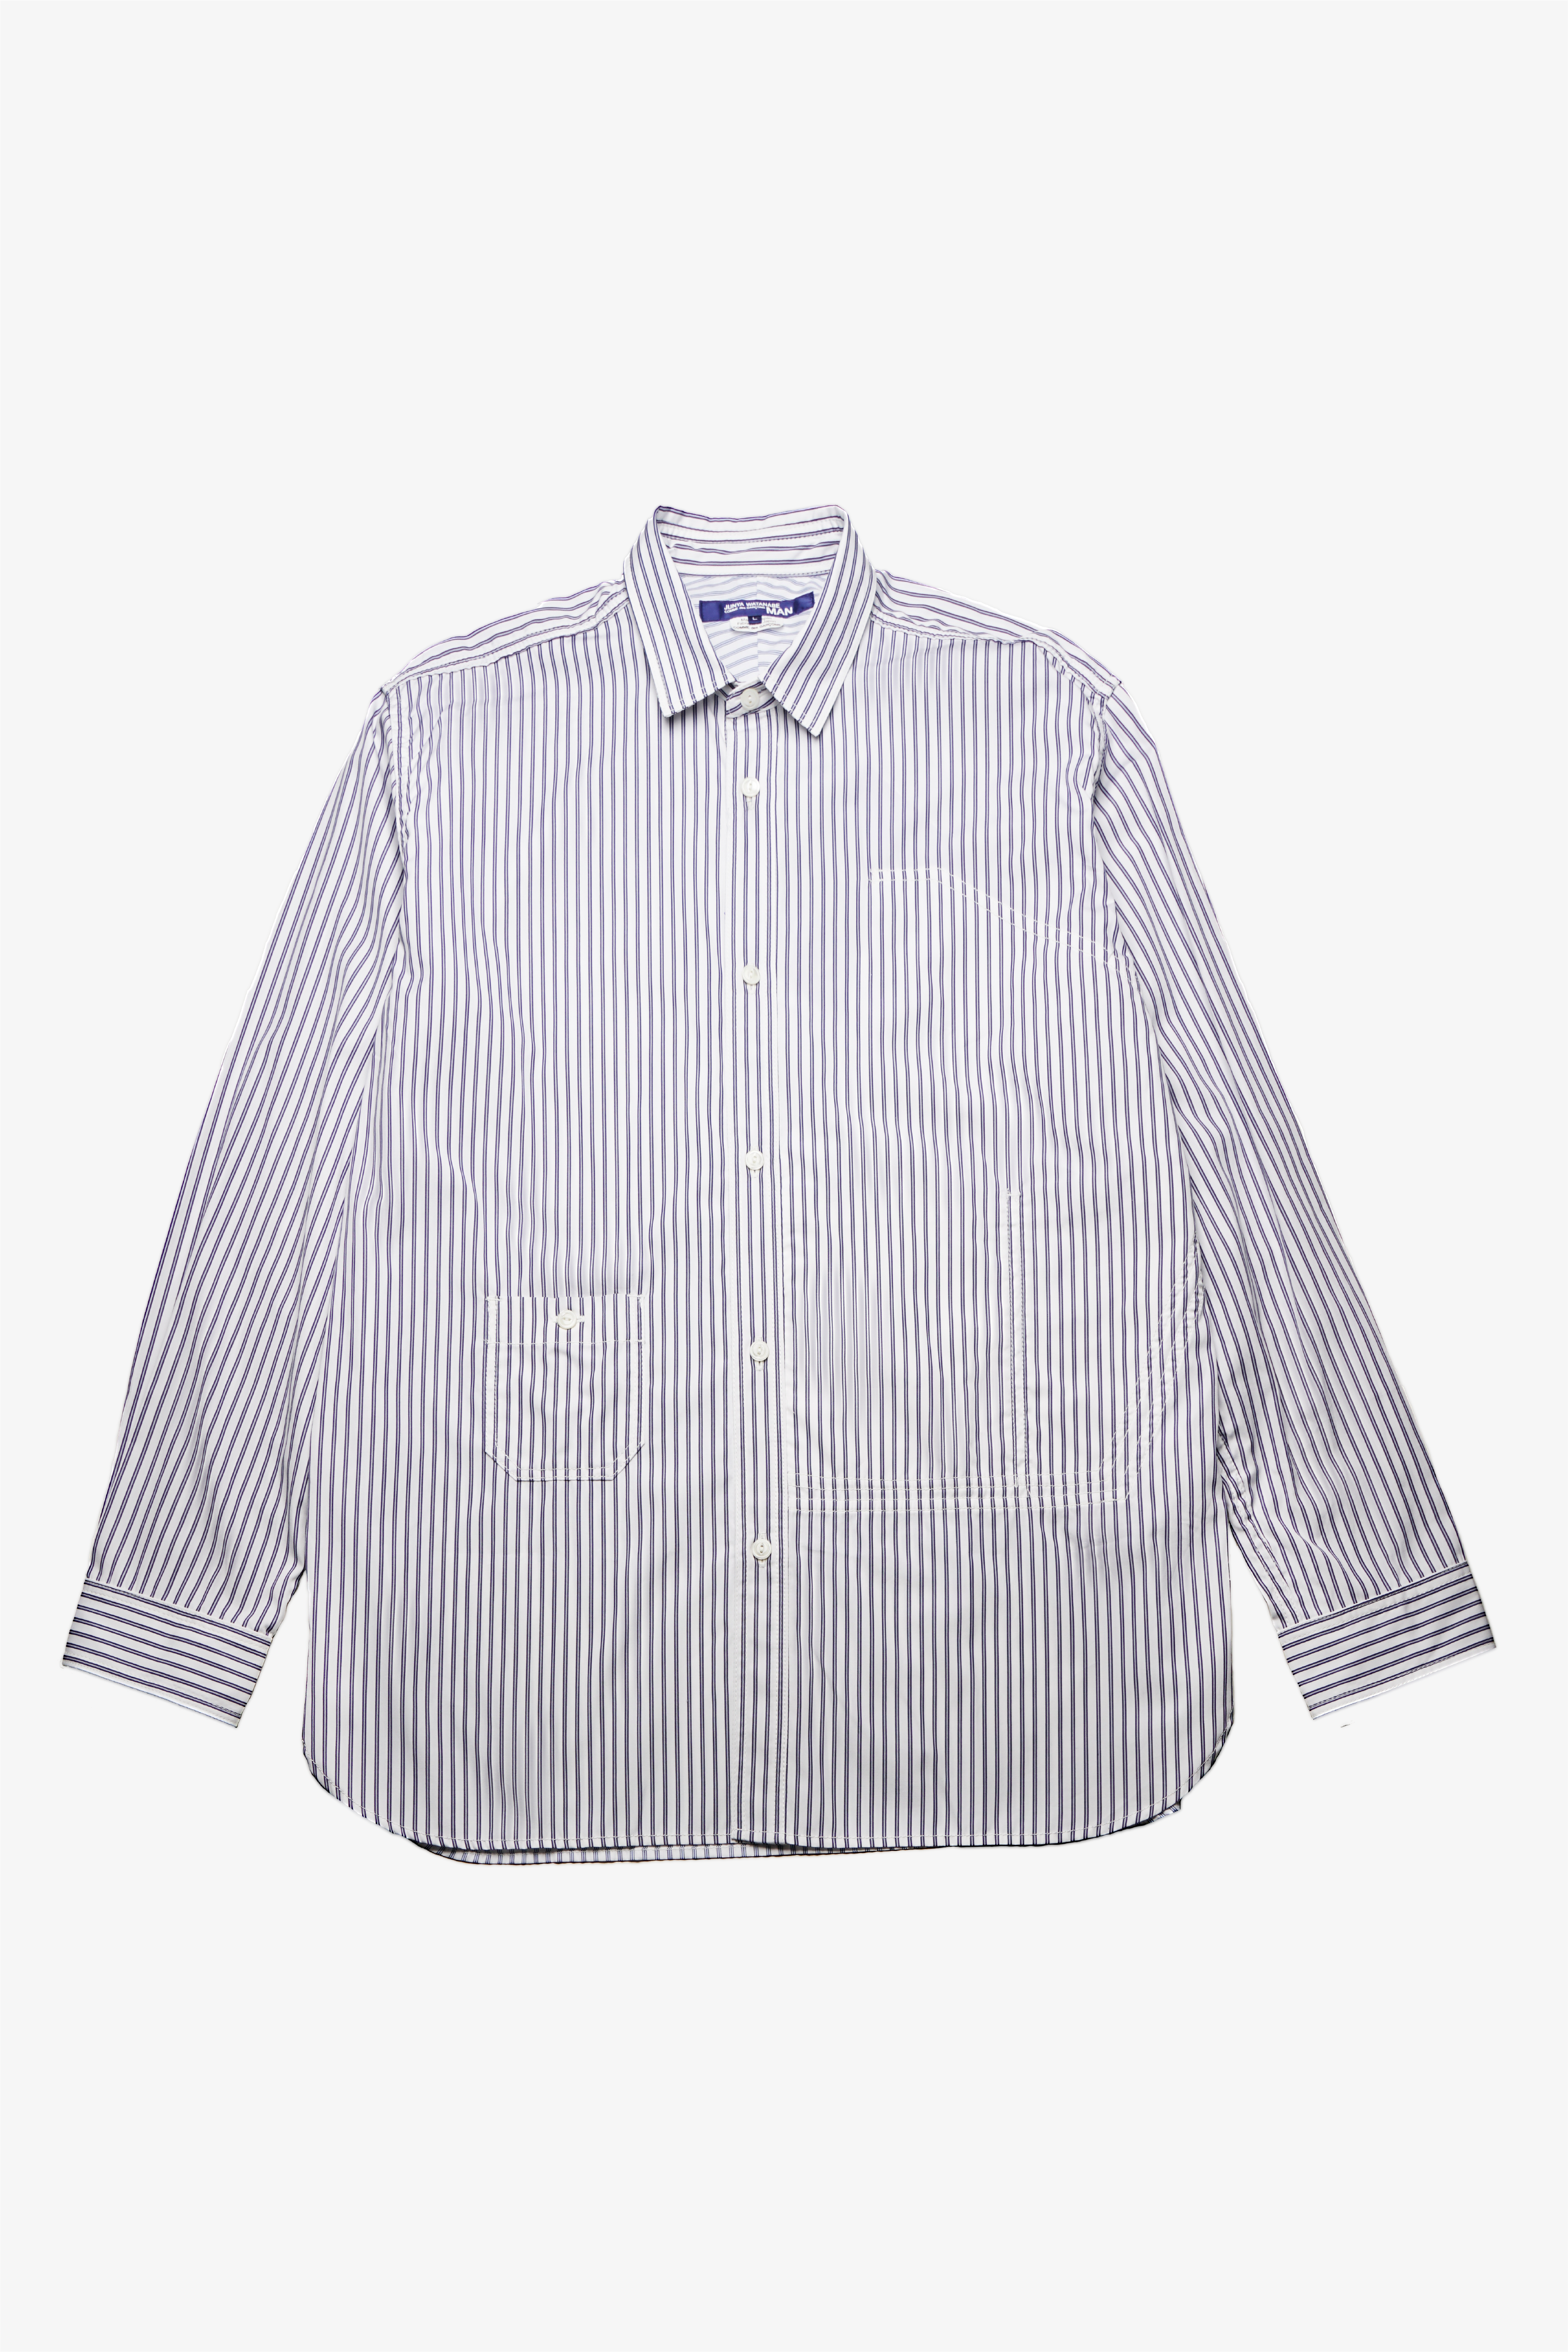 Selectshop FRAME - JUNYA WATANABE MAN Shirt Shirt Dubai